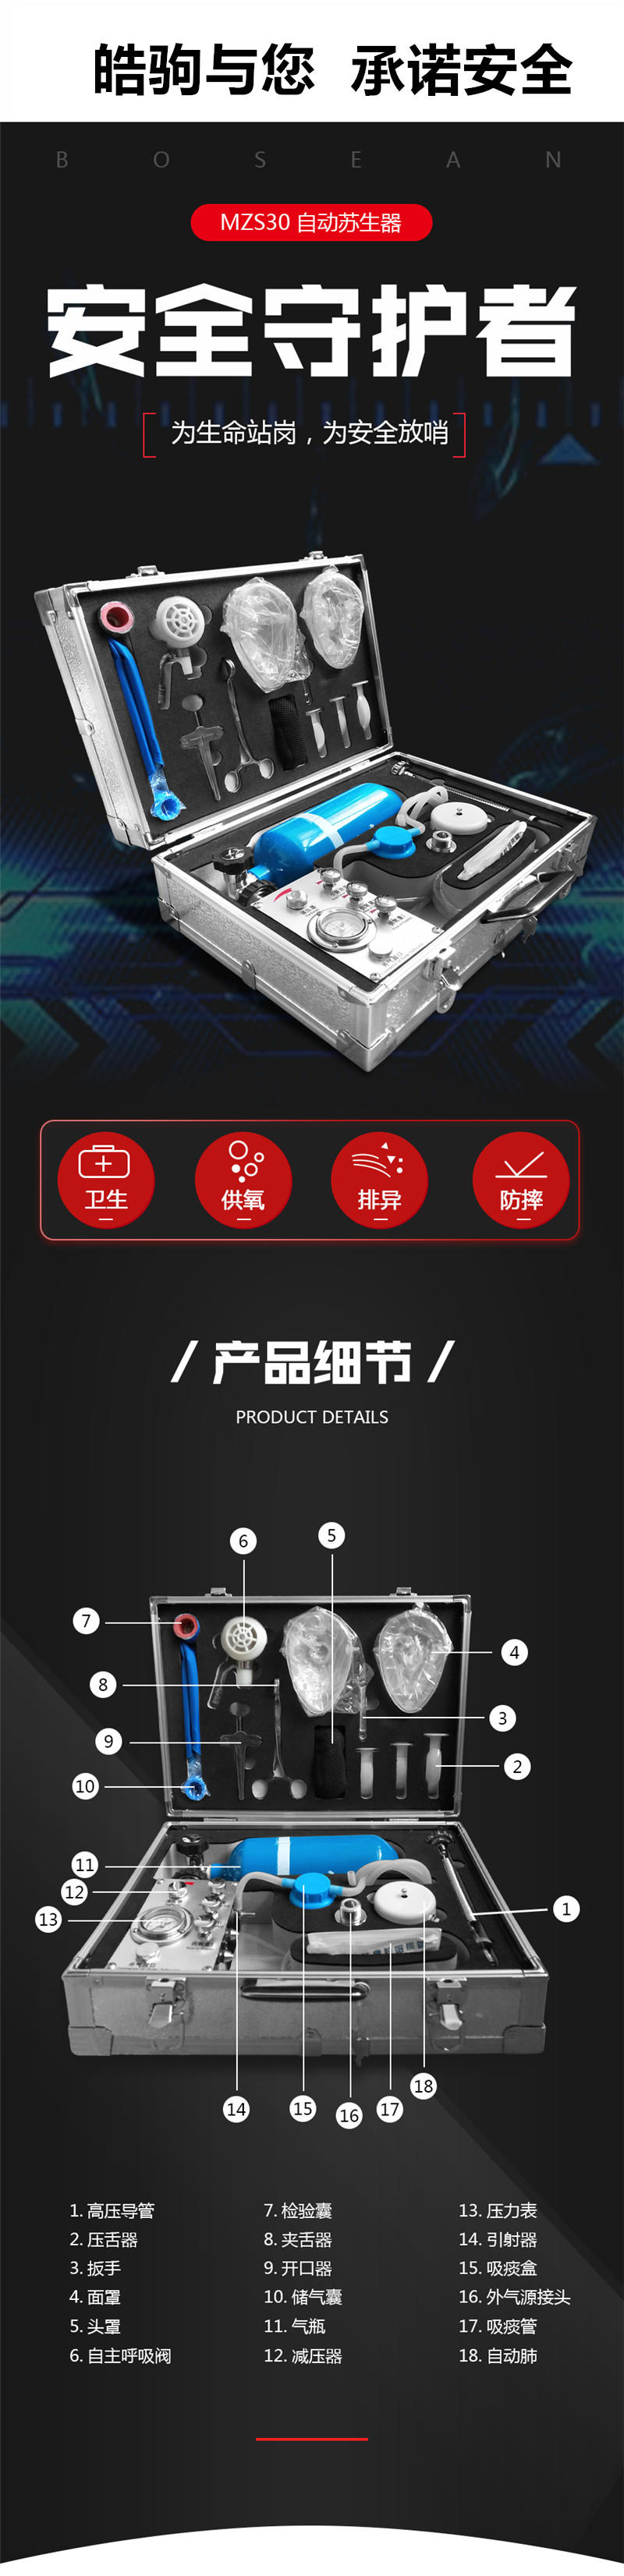 上海皓驹厂家 MZS-30 自动苏生器 便携式自动苏生器 医用自动苏生器示例图3